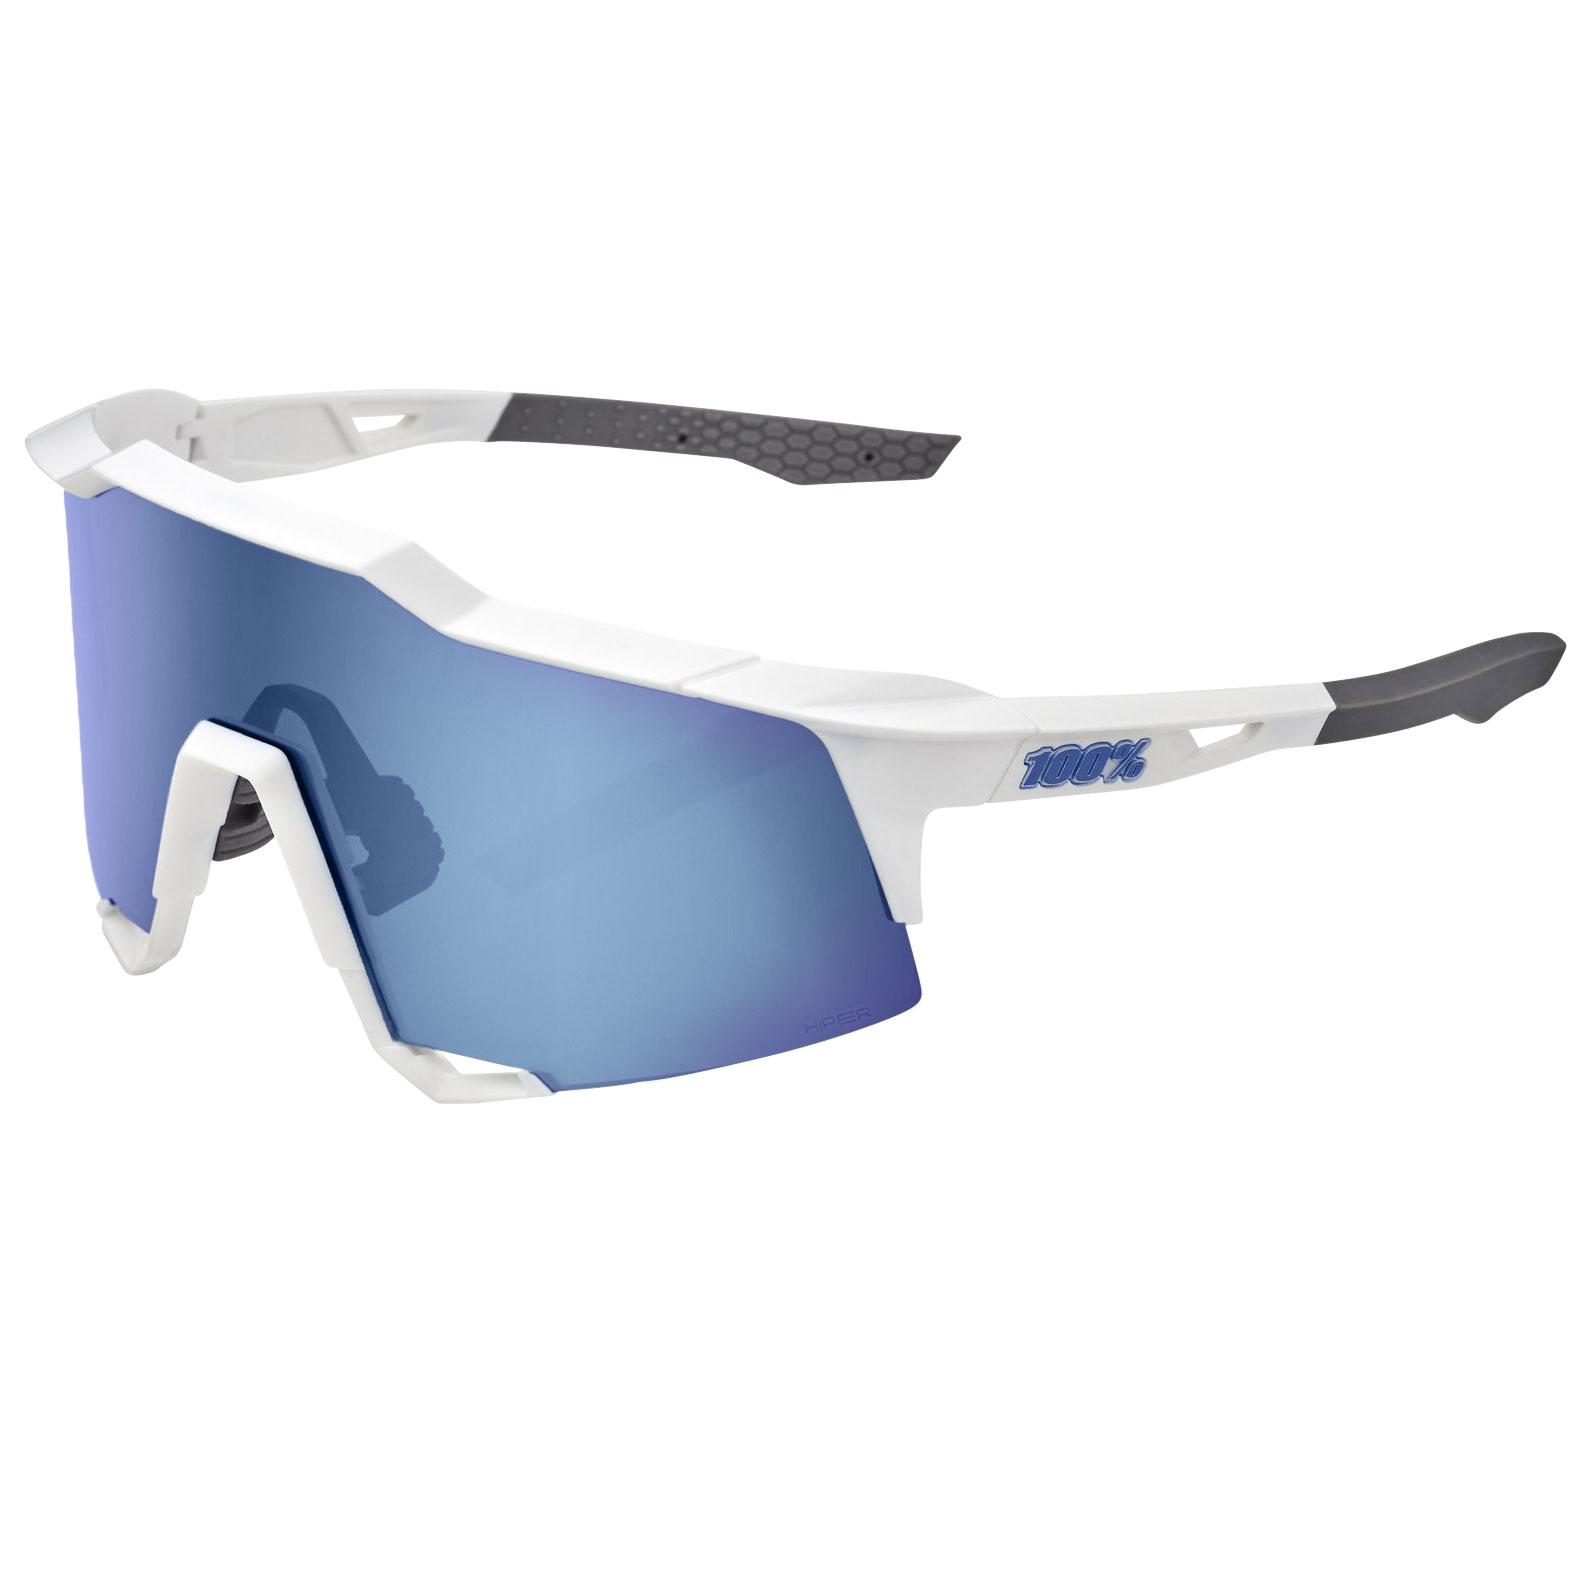 Produktbild von 100% Speedcraft Brille - Tall - HiPER Mirror Lens - Matte White/Blue Multilayer + Clear